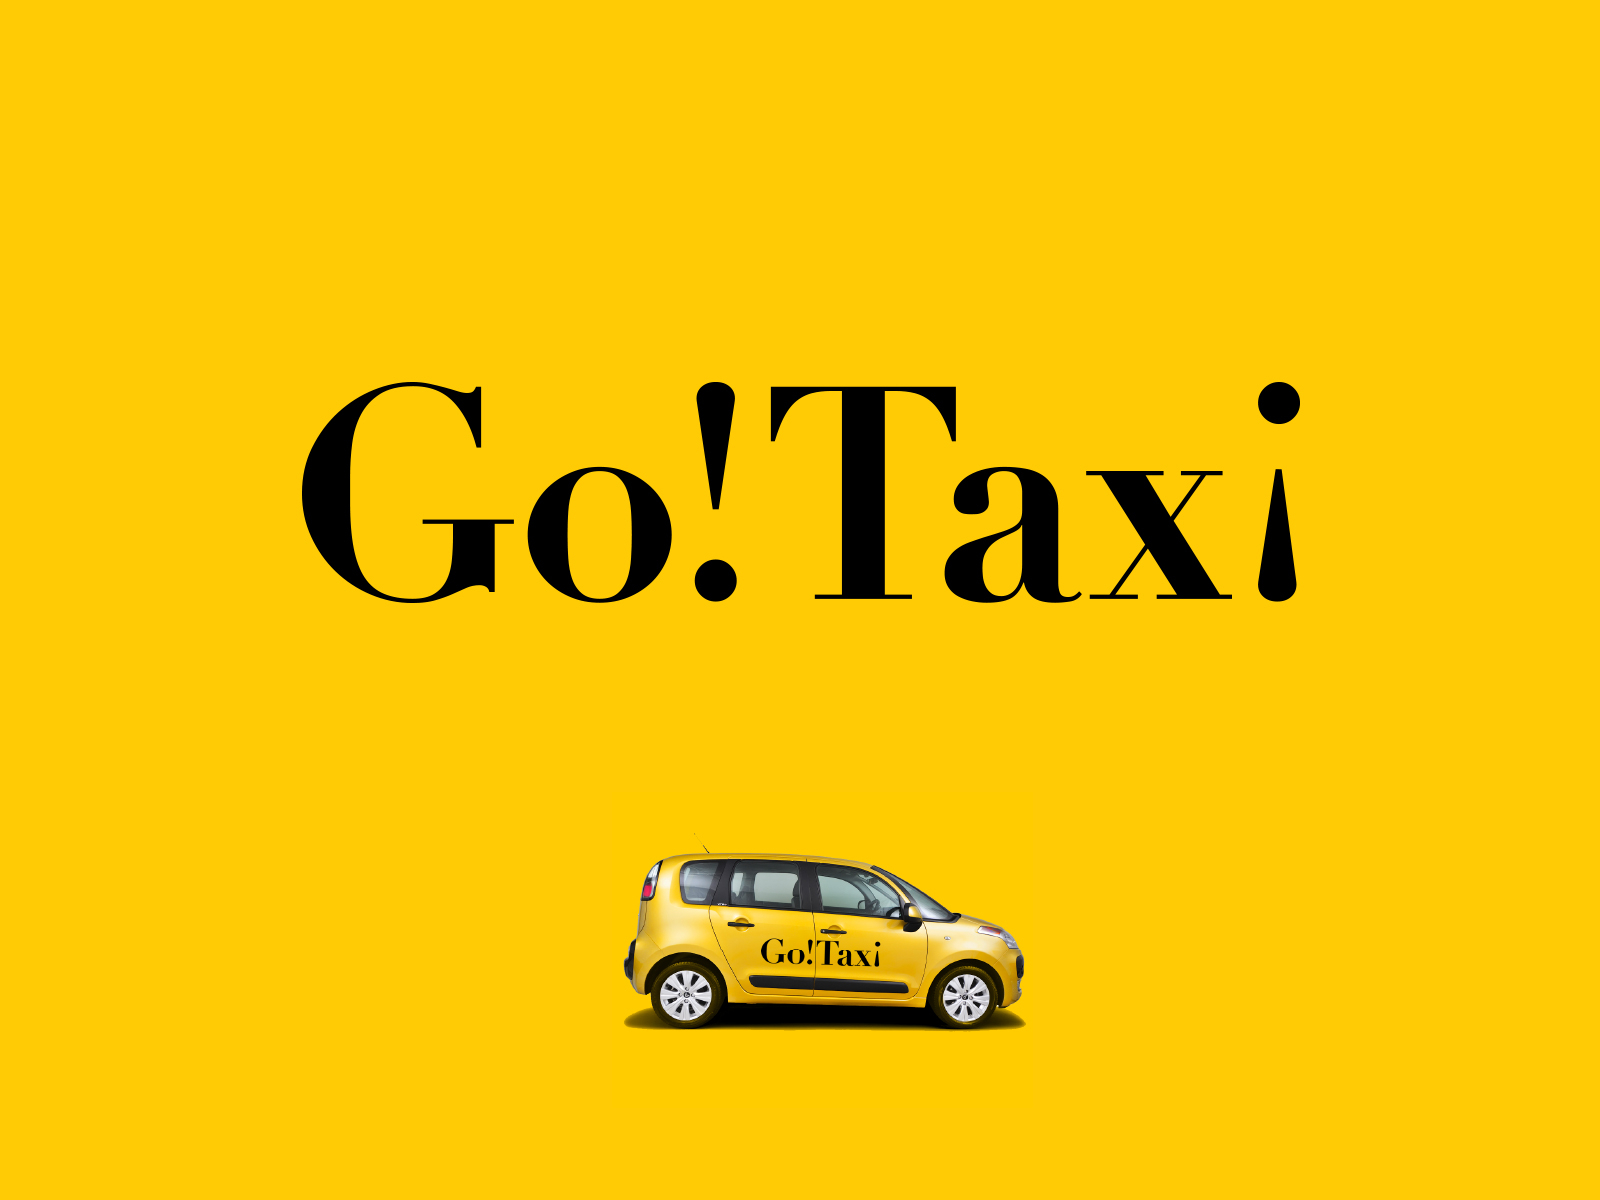 Вызвать такси гоу. Логотип такси. Такси фон.